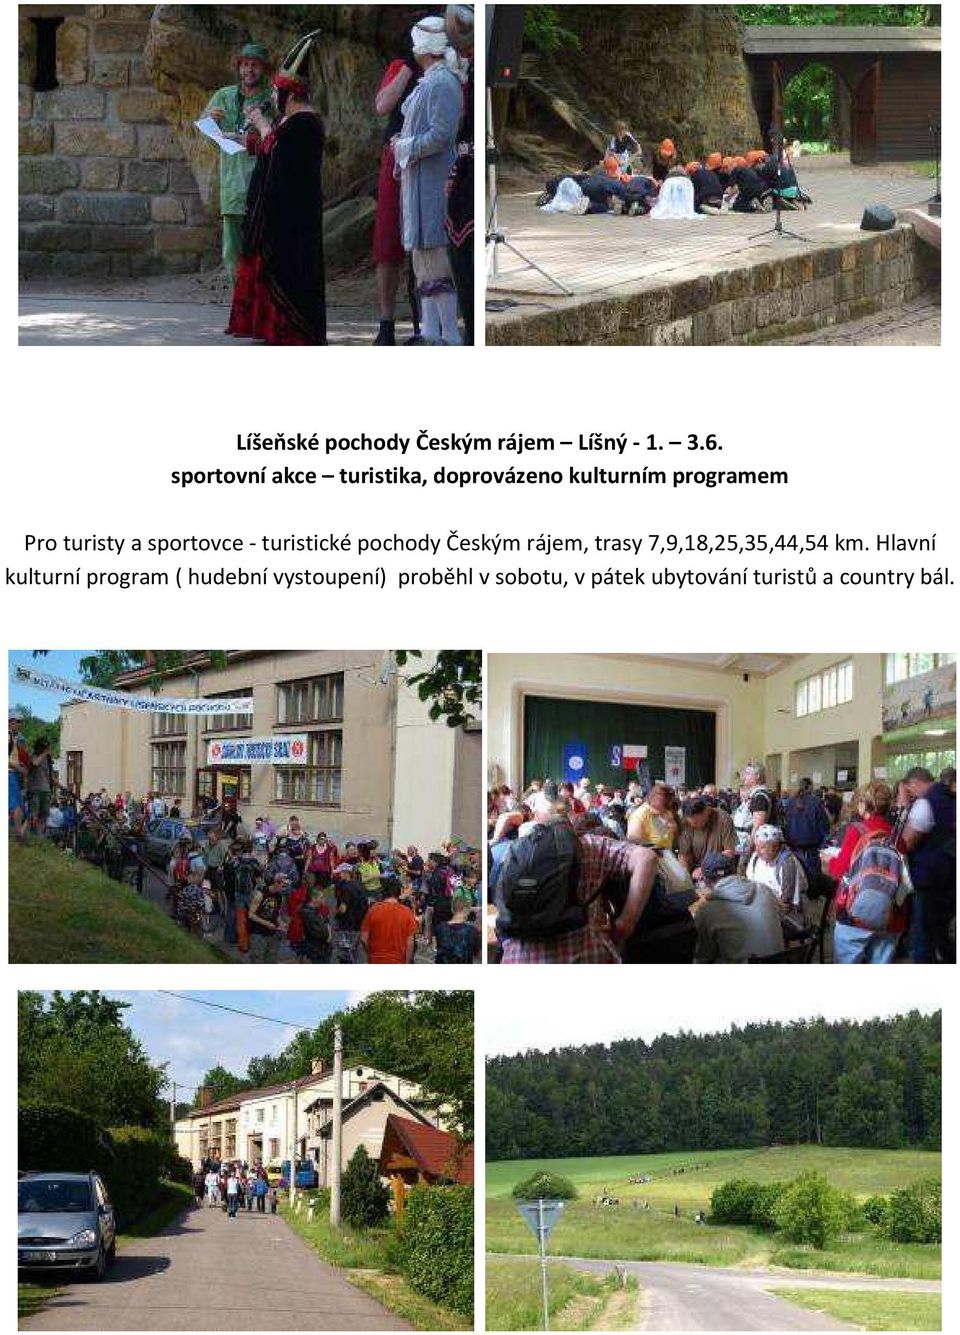 sportovce - turistické pochody Českým rájem, trasy 7,9,18,25,35,44,54 km.